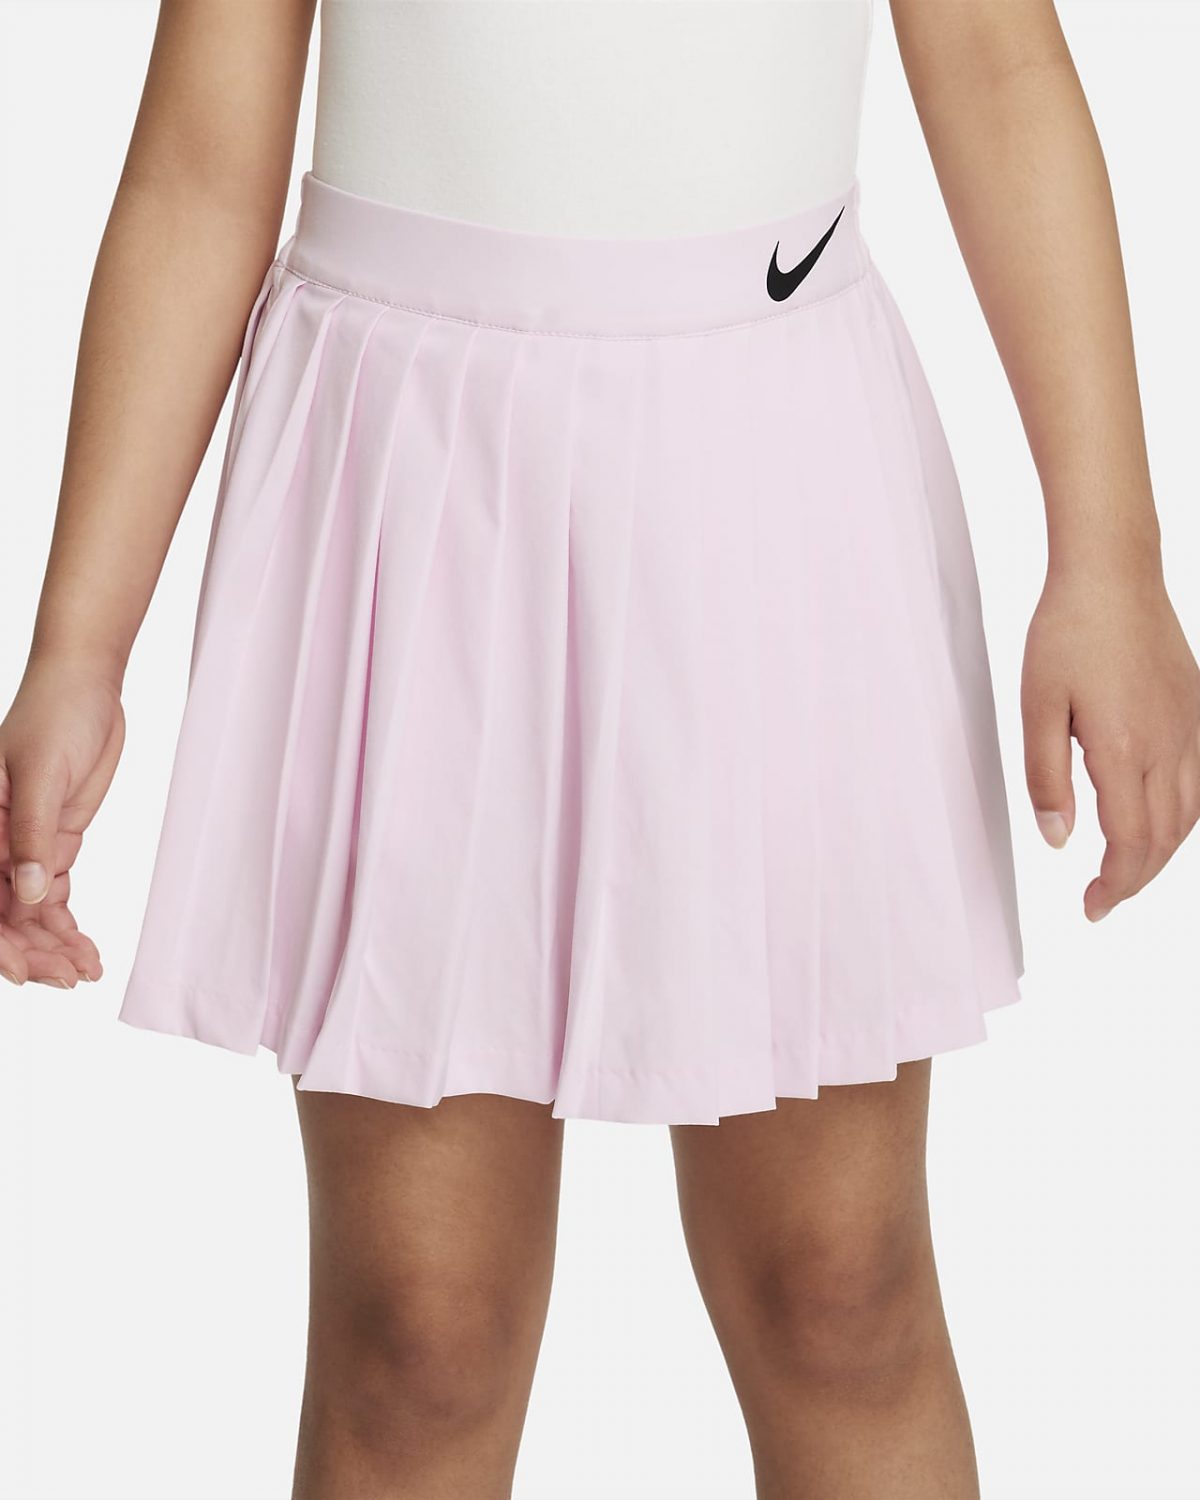 Детская юбка Nike Jelly фотография